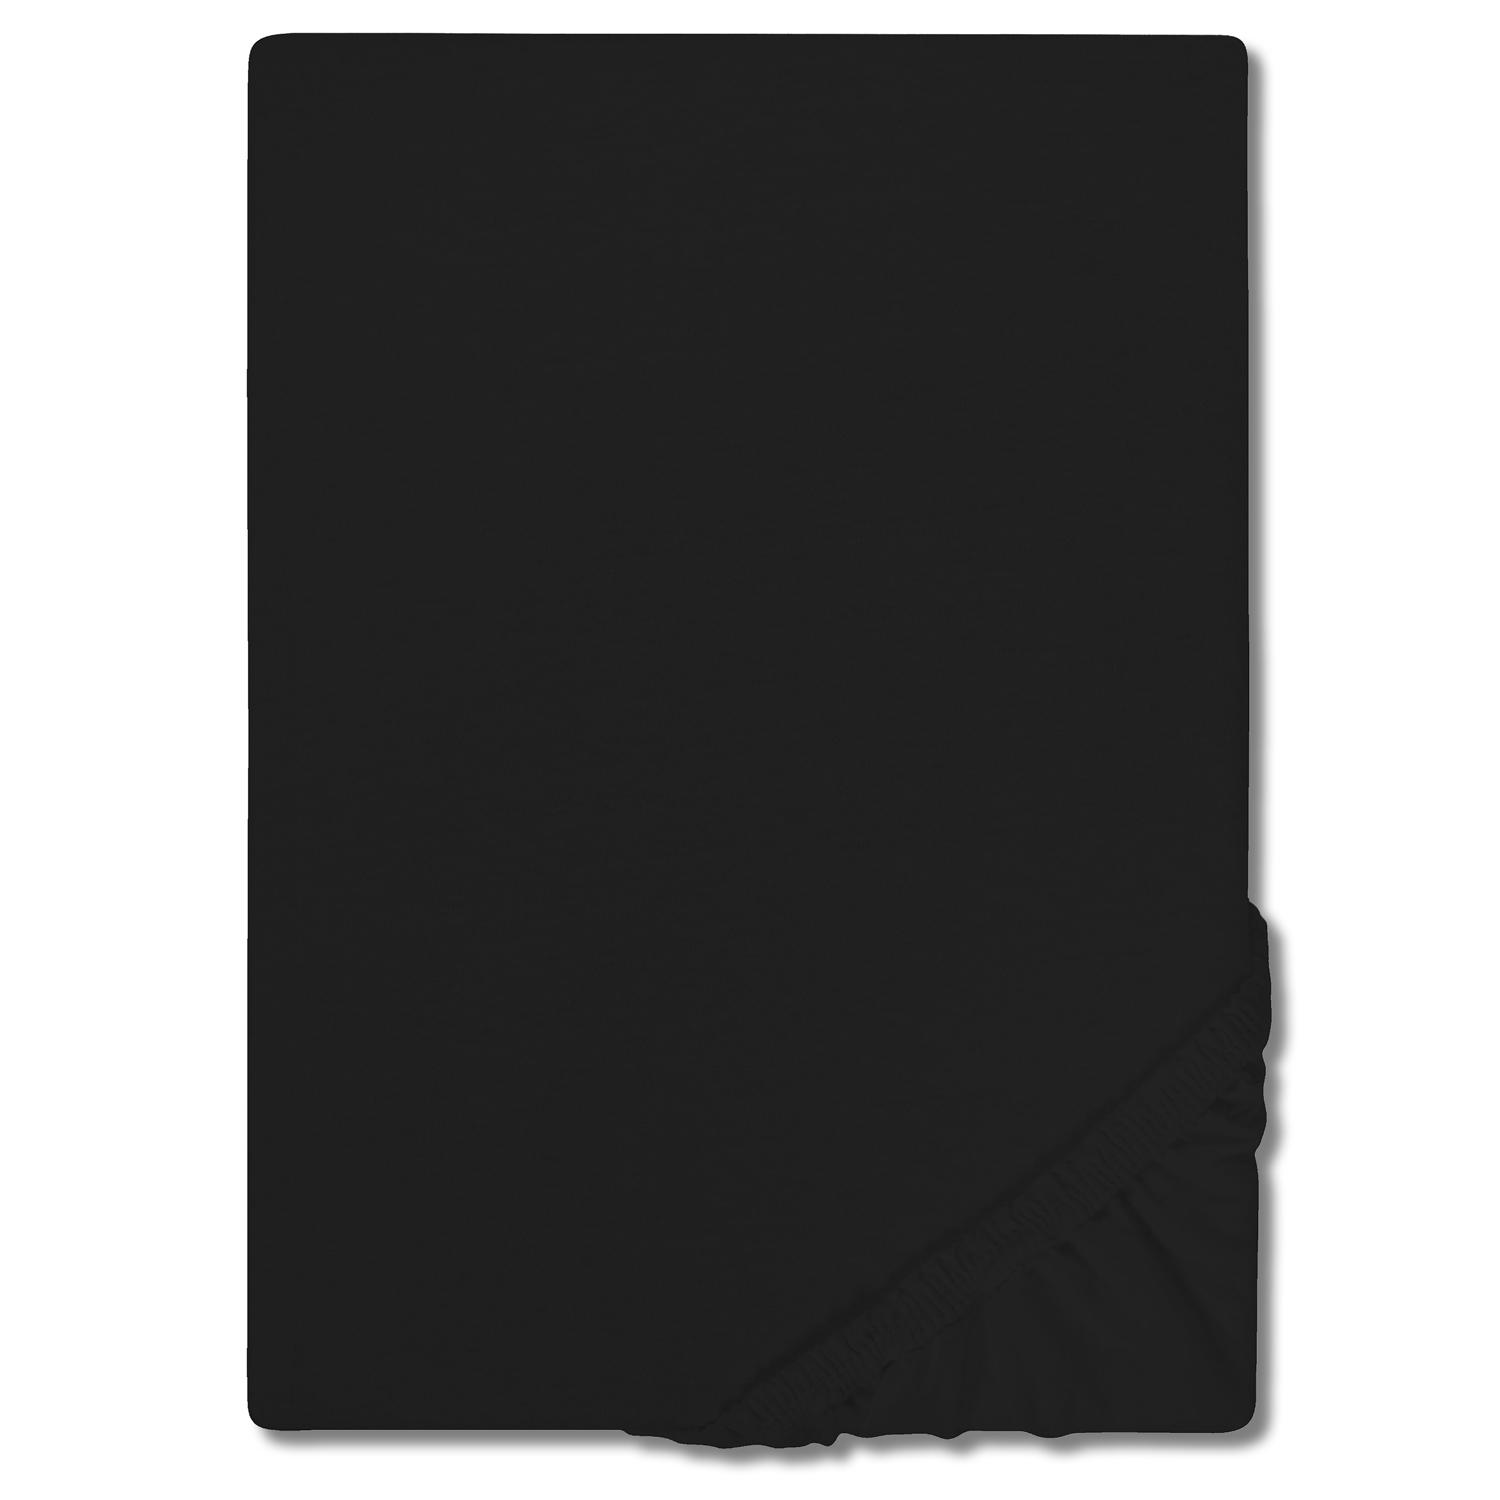 CloudComfort Základní napínací prostěradlo jersey černé 180 x 190 - 200 x 200 cm